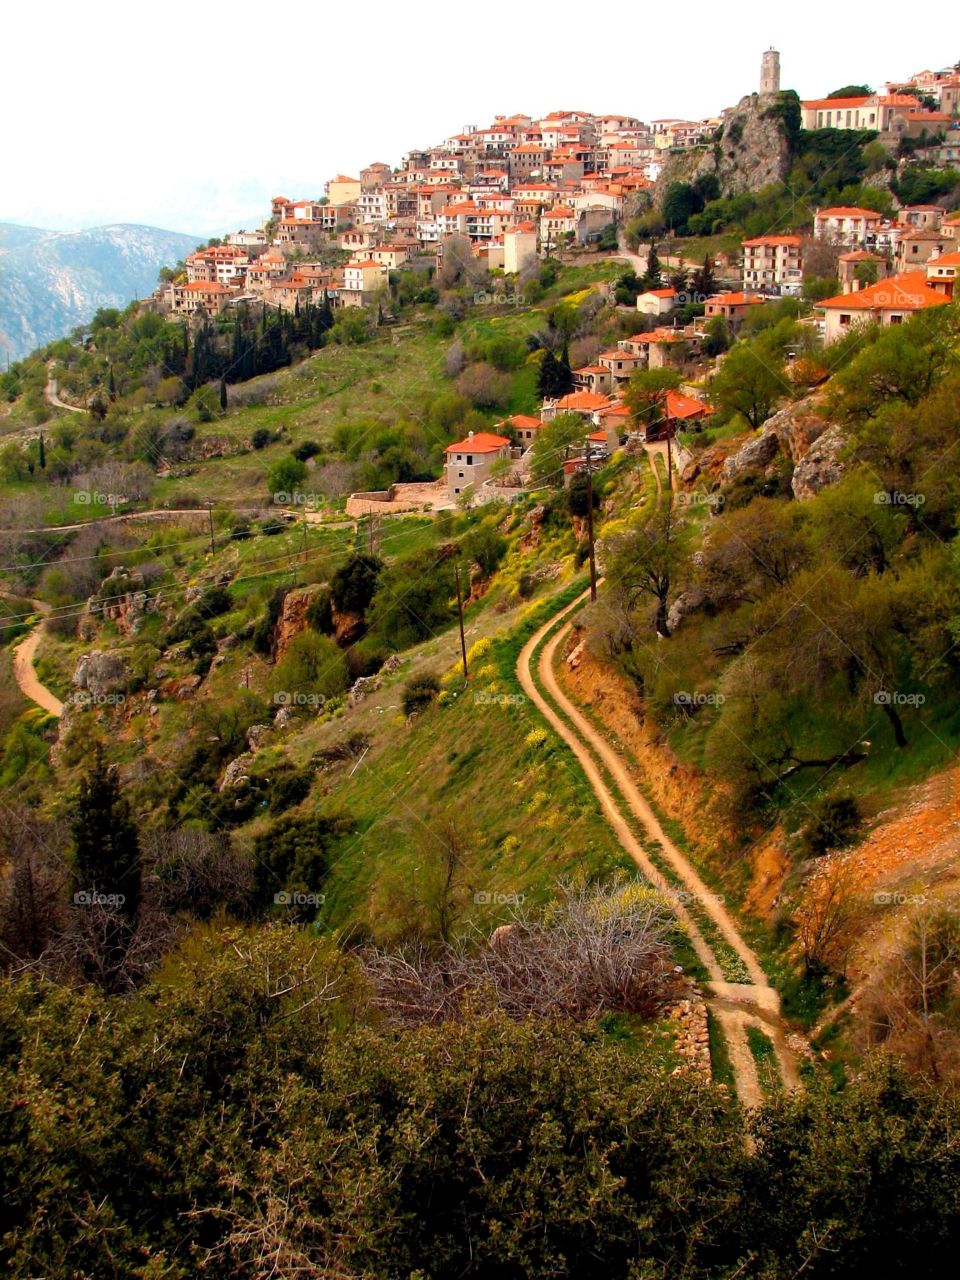 Hillside town, Greece. A hillside town near Delphi, Greece